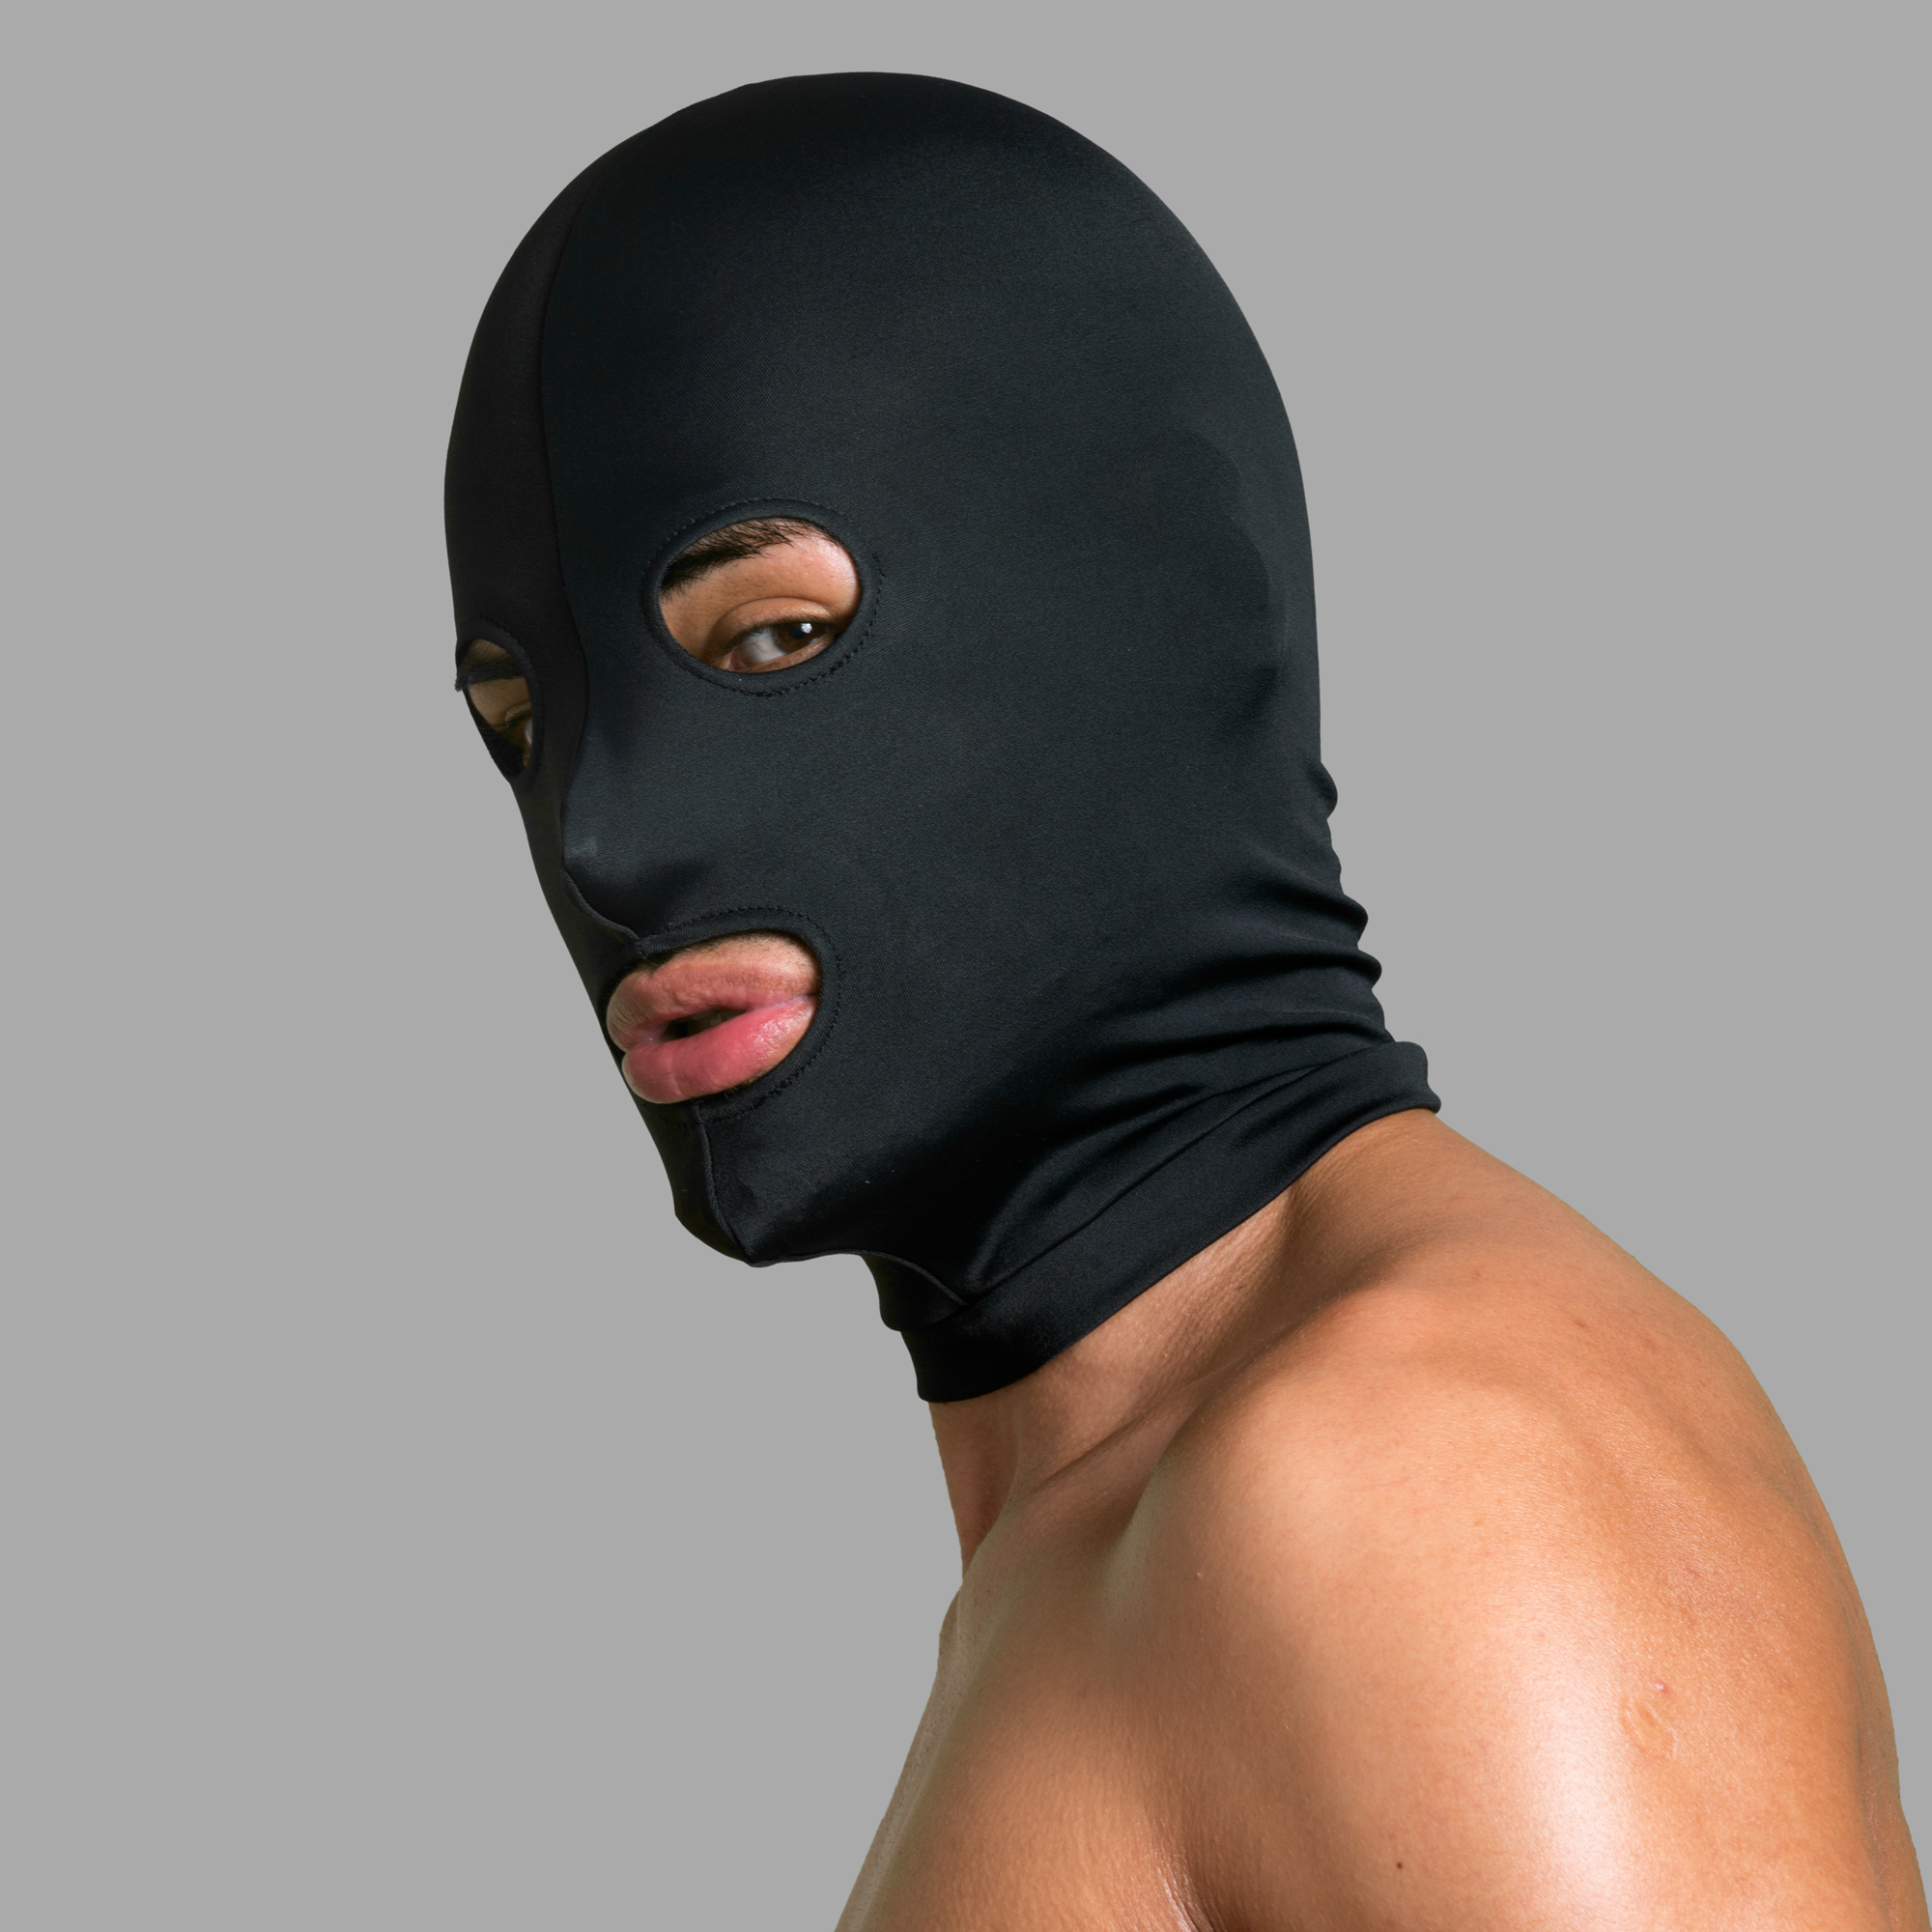 Compra Maschera BDSM in spandex con occhi e bocca online su MEO Ita